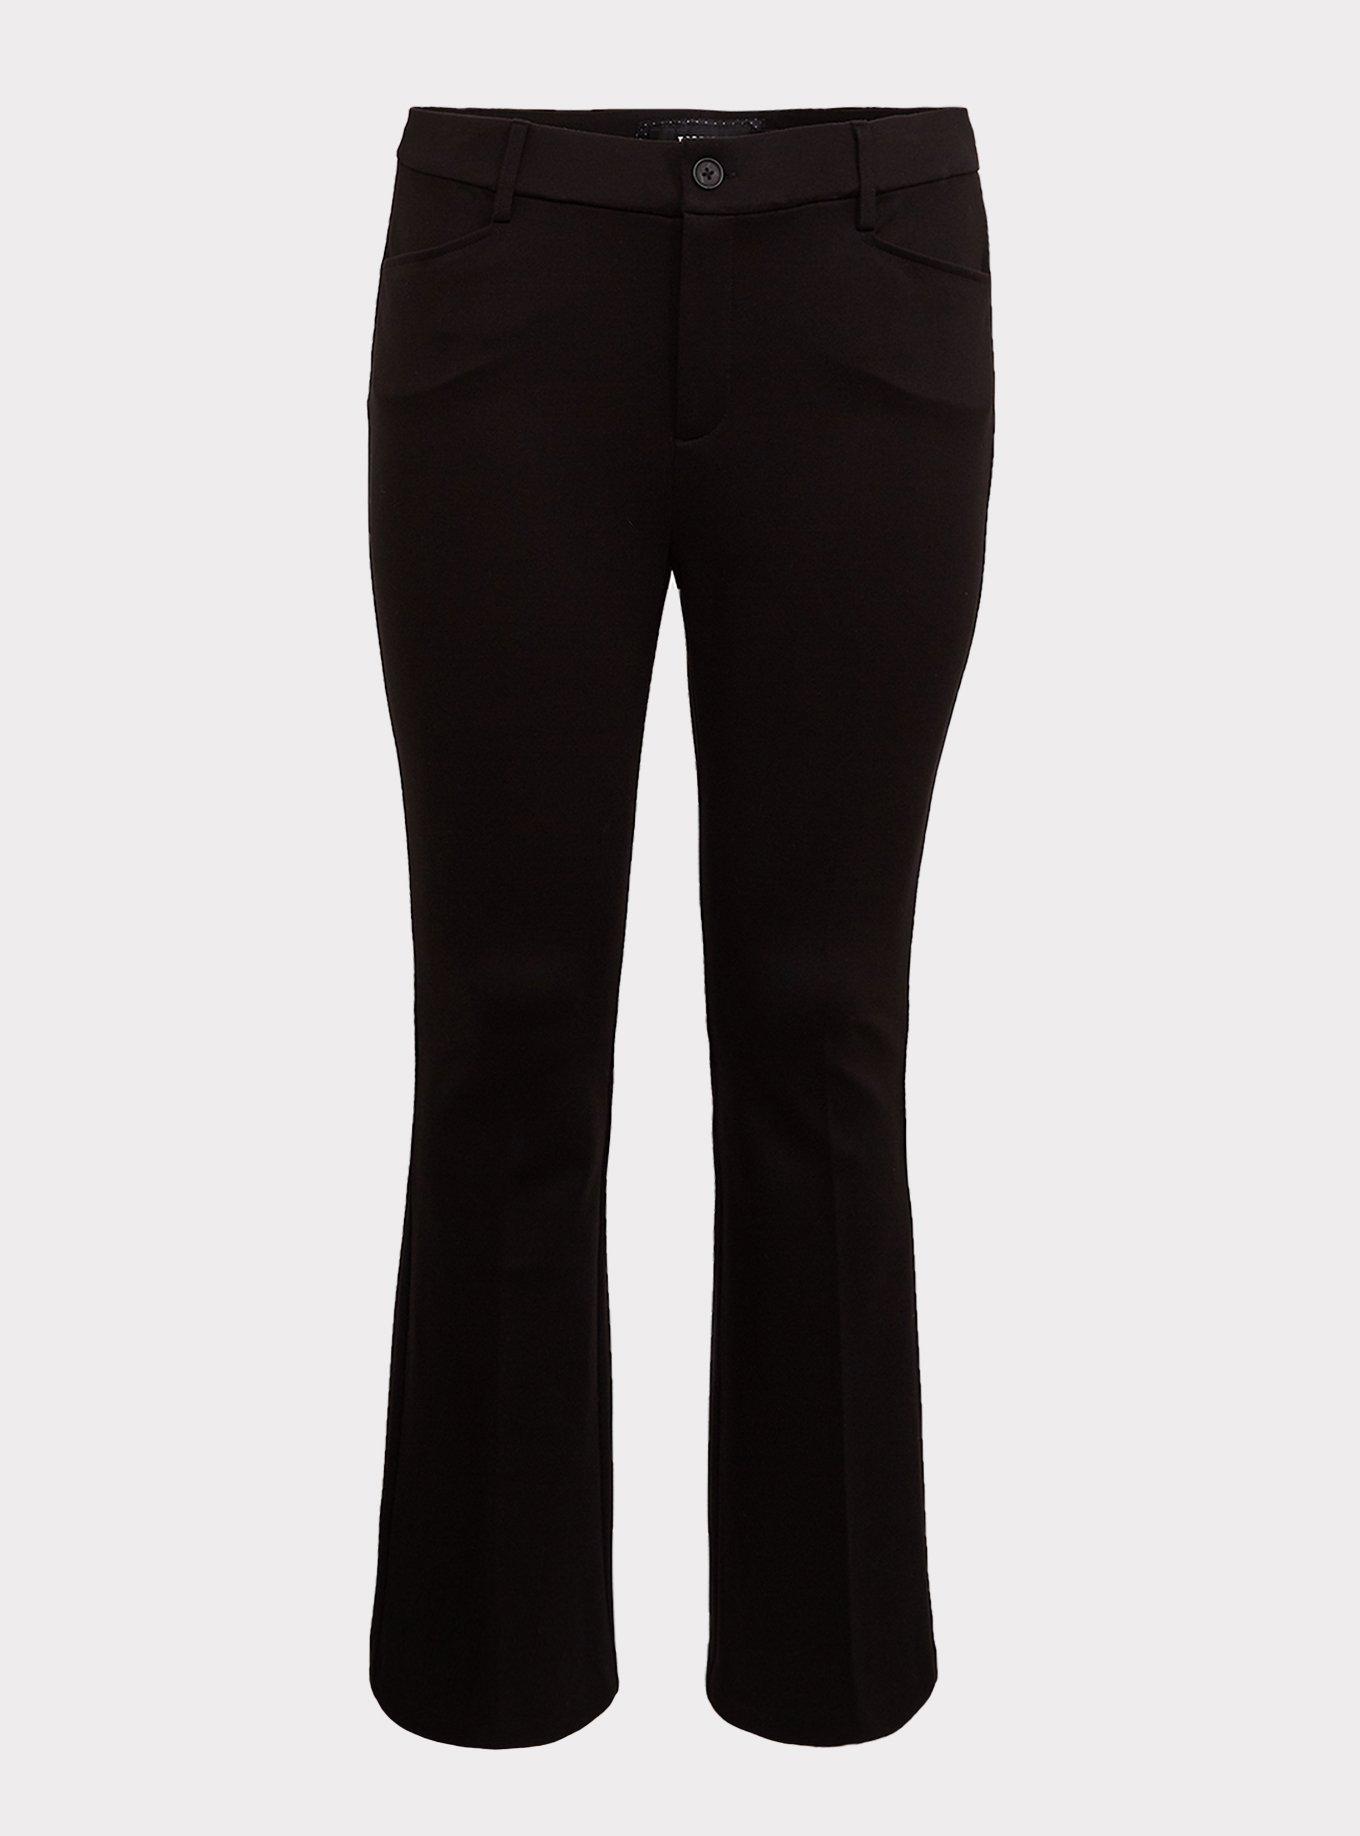 Plus Size - Studio Signature Premium Ponte Stretch Trouser - Black